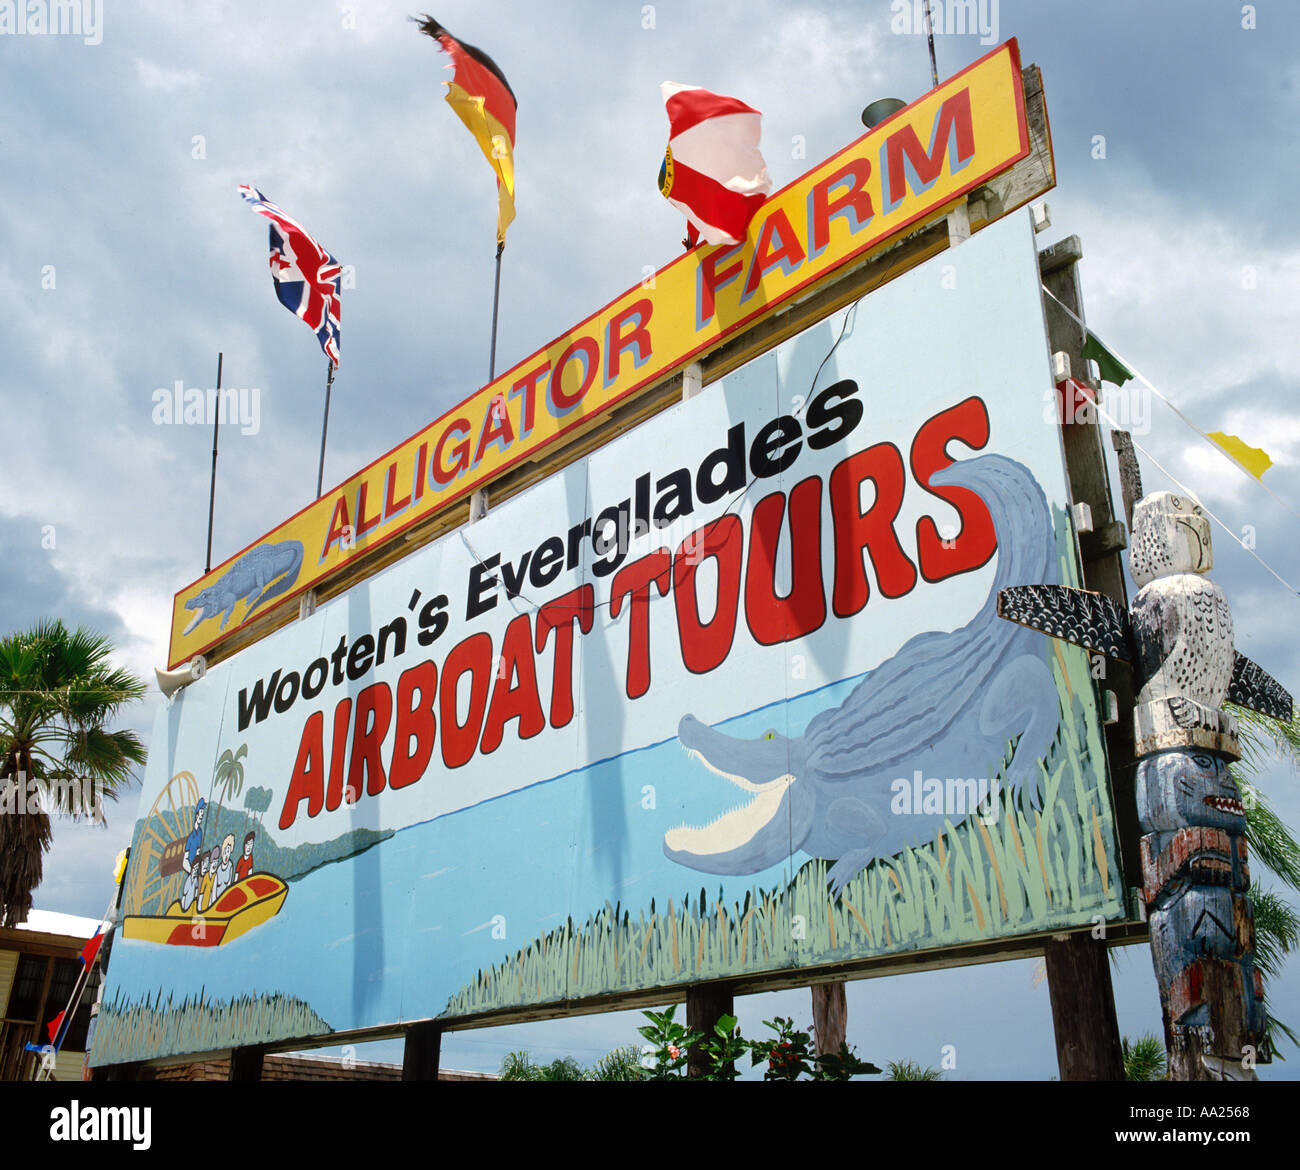 Melden Sie für Alligatorfarm und Airboat Tours, Florida Everglades, Florida, USA Stockfoto